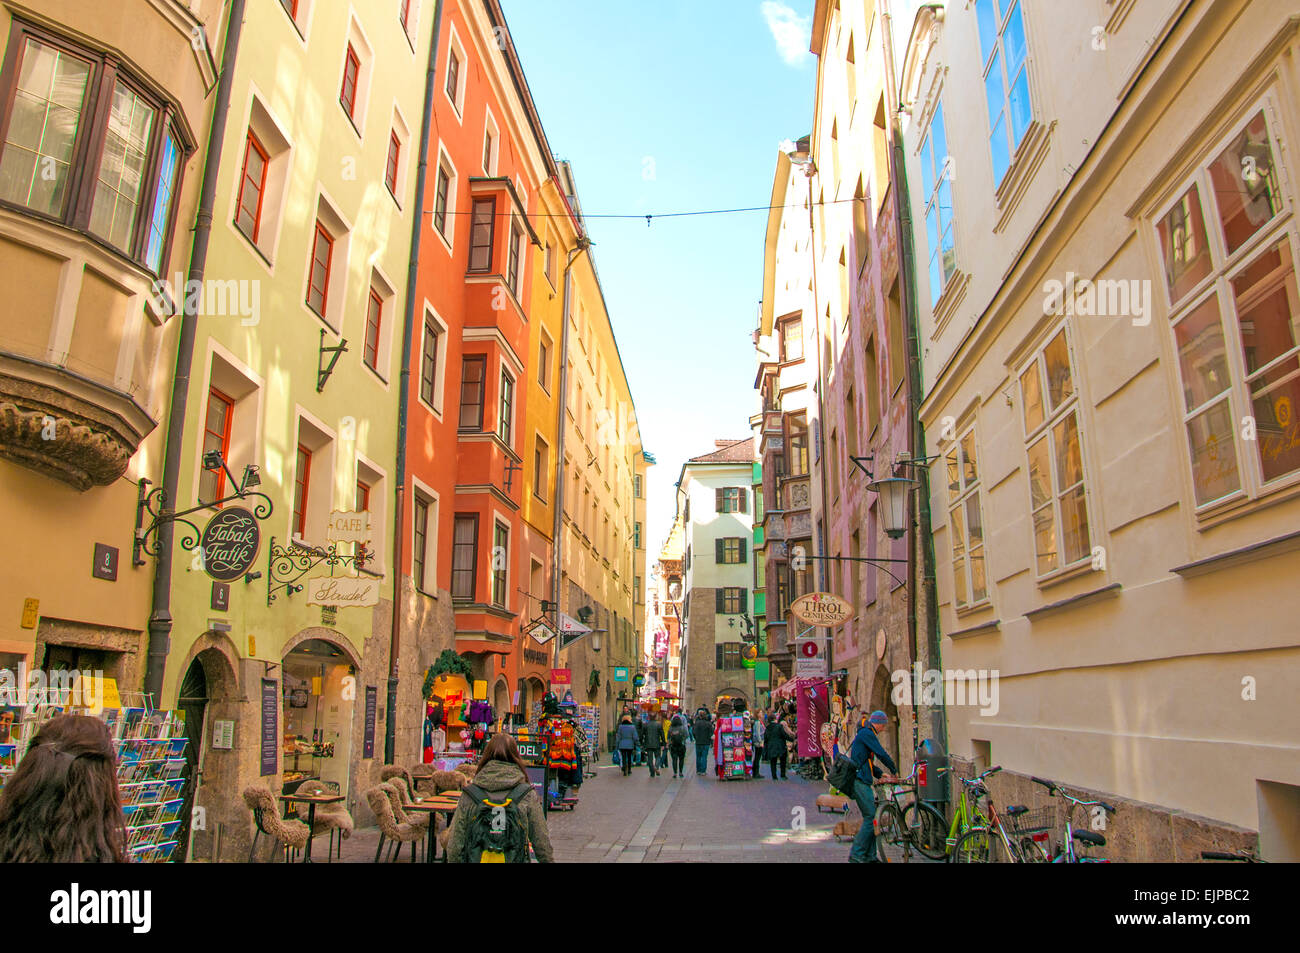 Une étroite rue européenne dans la ville d'Innsbruck, Autriche qui repose à la base des Alpes autrichiennes. Banque D'Images